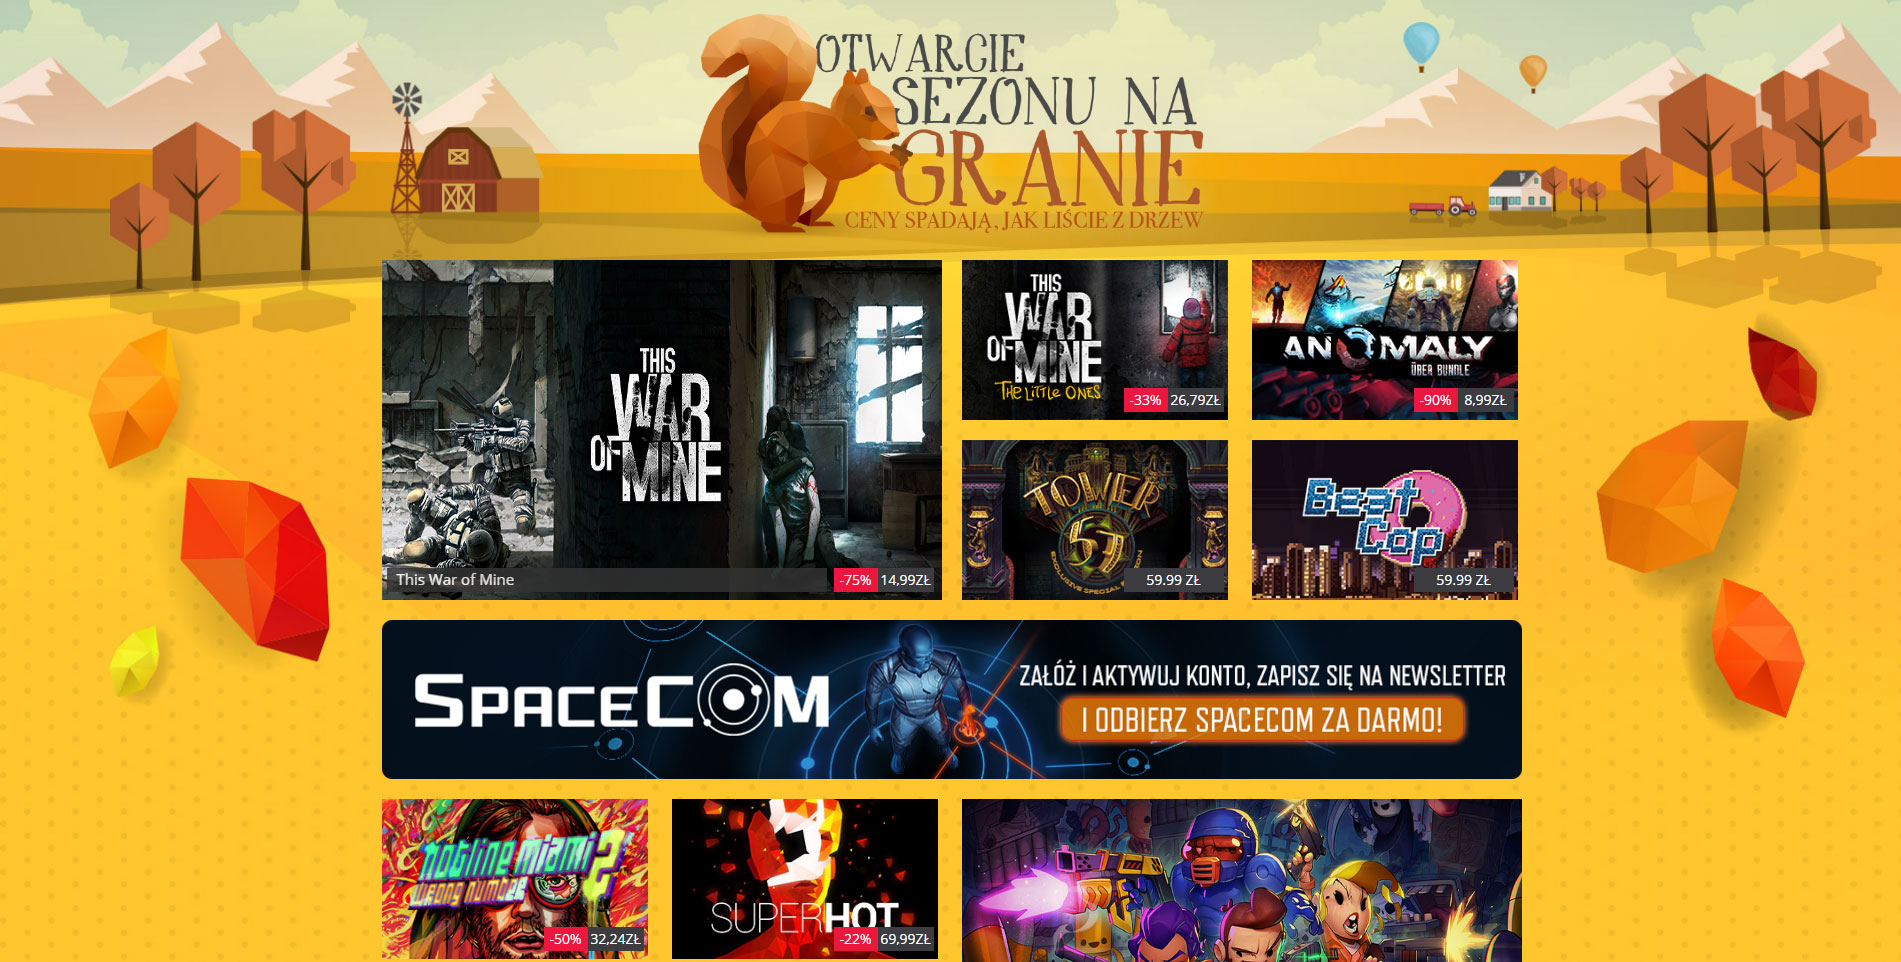 Gra za darmo, jesienna wyprzedaż i polskie ceny. Games Republic od dzisiaj w Polsce!